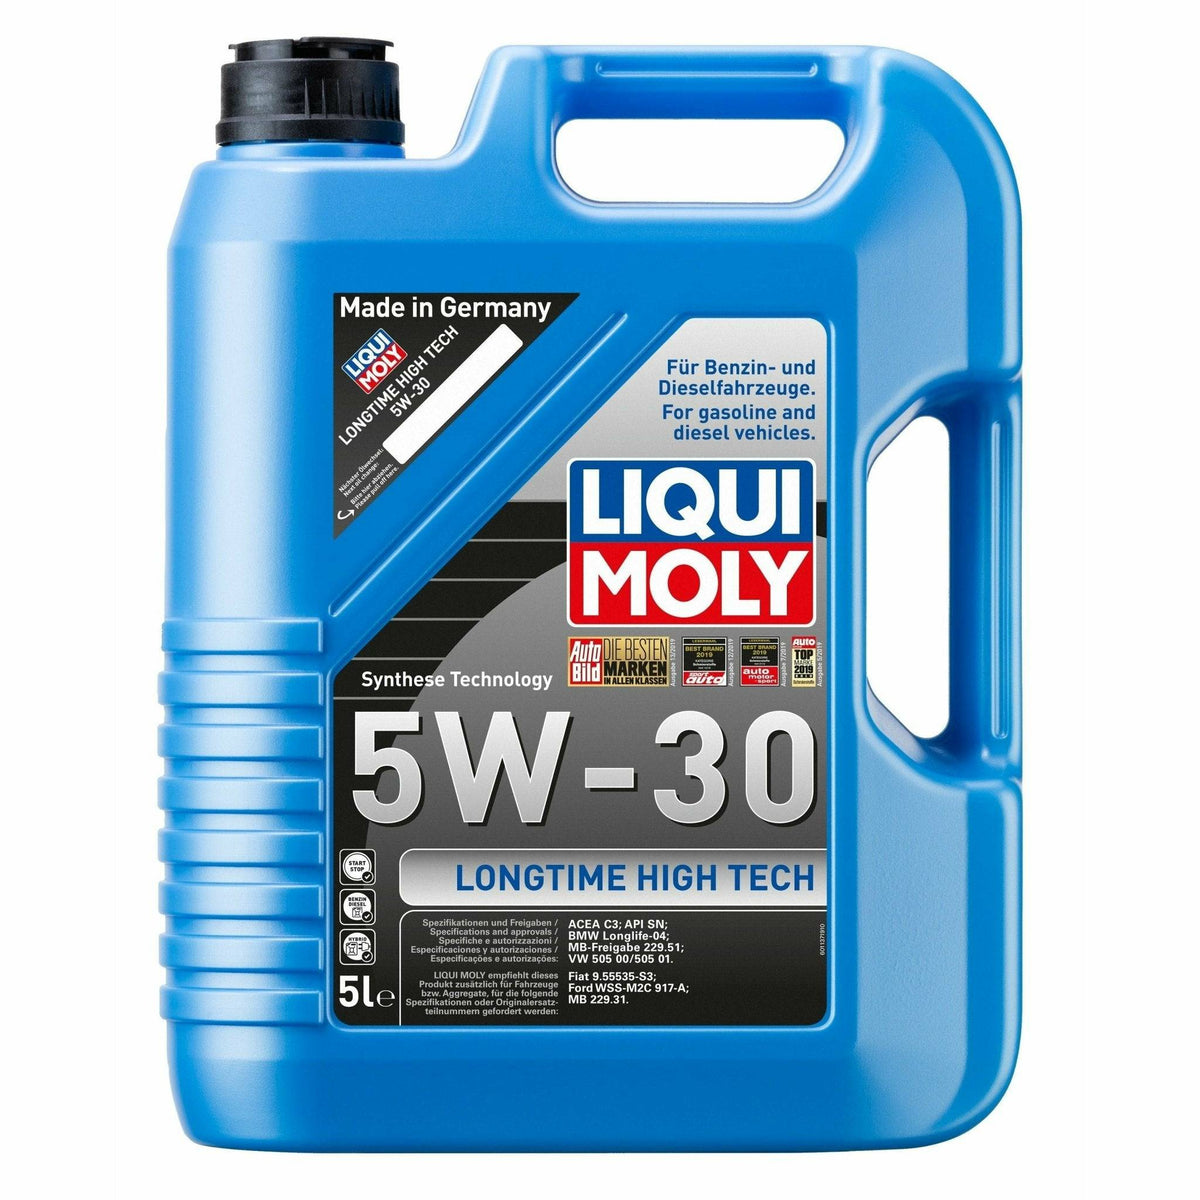 5W30 Synthetic Engine Oil Liqui Moly Top Tec 4200 BMW LL PORSCHE 8973 7 L